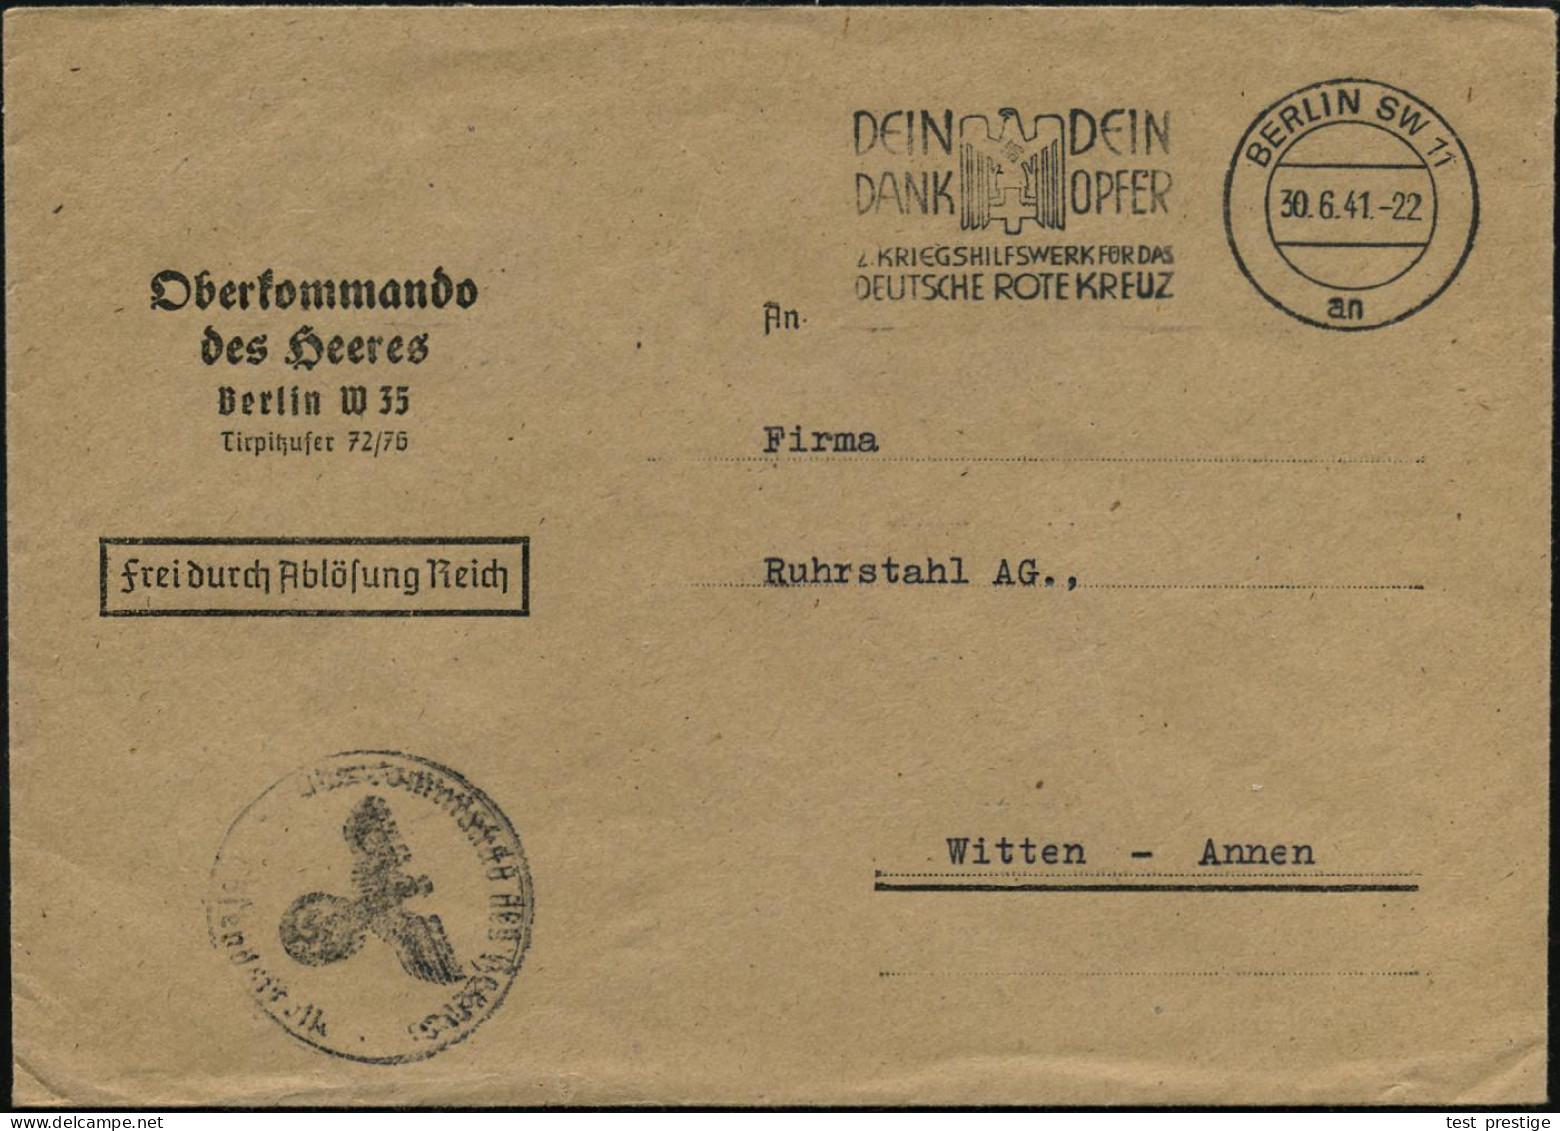 BERLIN SW11/ An/ ..2.KRIEGSWHW FÜR DAS/ DEUTSCHE ROTE KREUZ 1941 (30.6.) MWSt (RK-Logo) Dienst-Bf.: Oberkommando Des  He - Guerre Mondiale (Seconde)